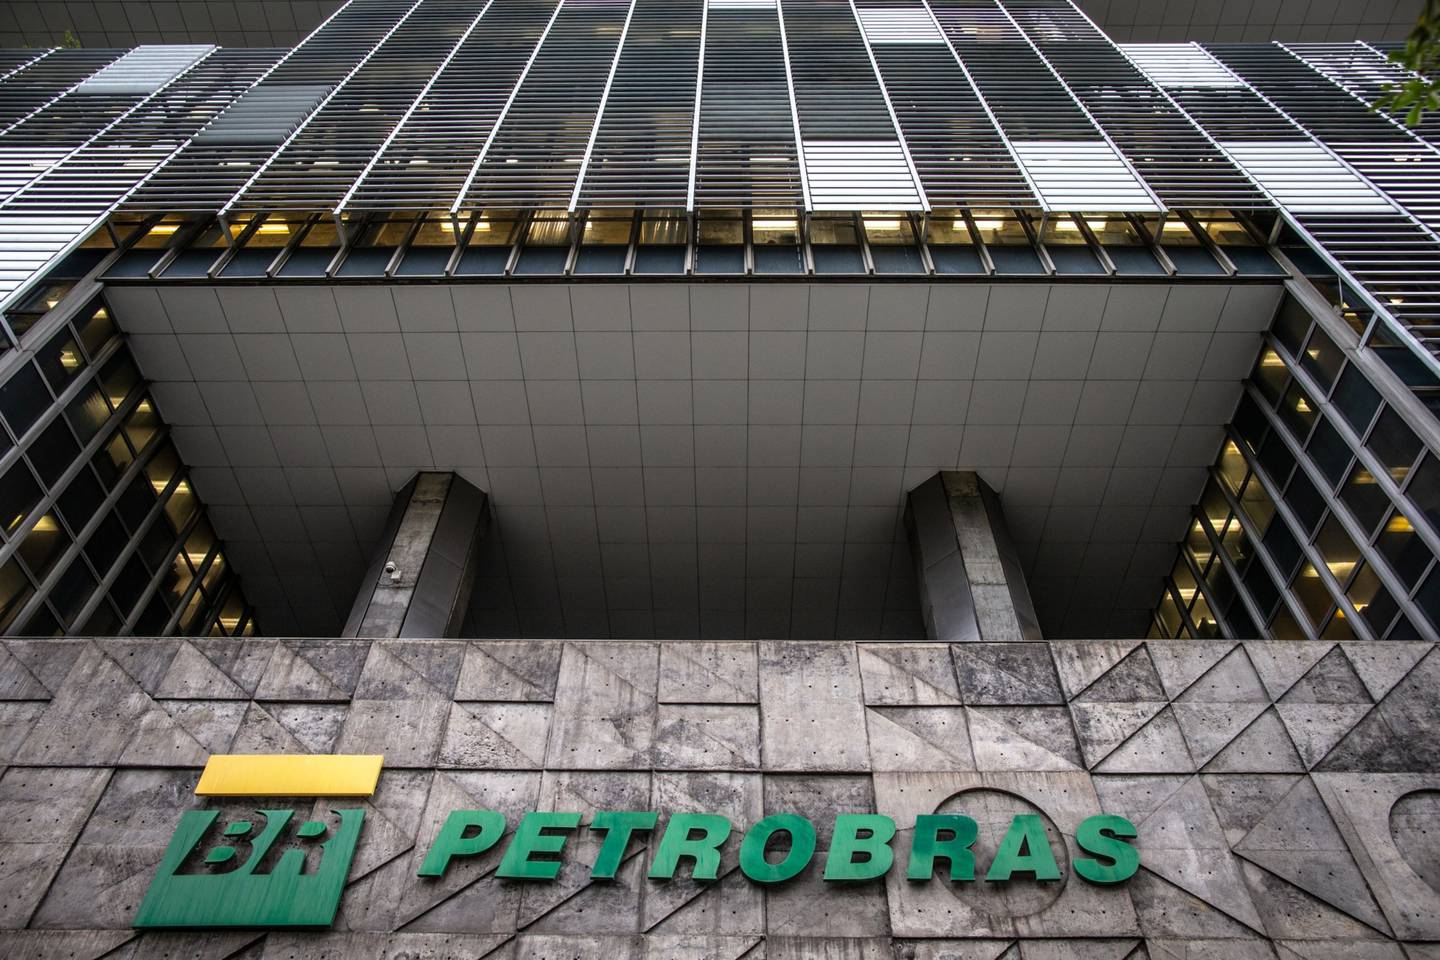 Grupo Ultra estaria negociando a compra da Refap da Petrobras e avalia fazer aquisições também na área de gás natural, segundo o Valor